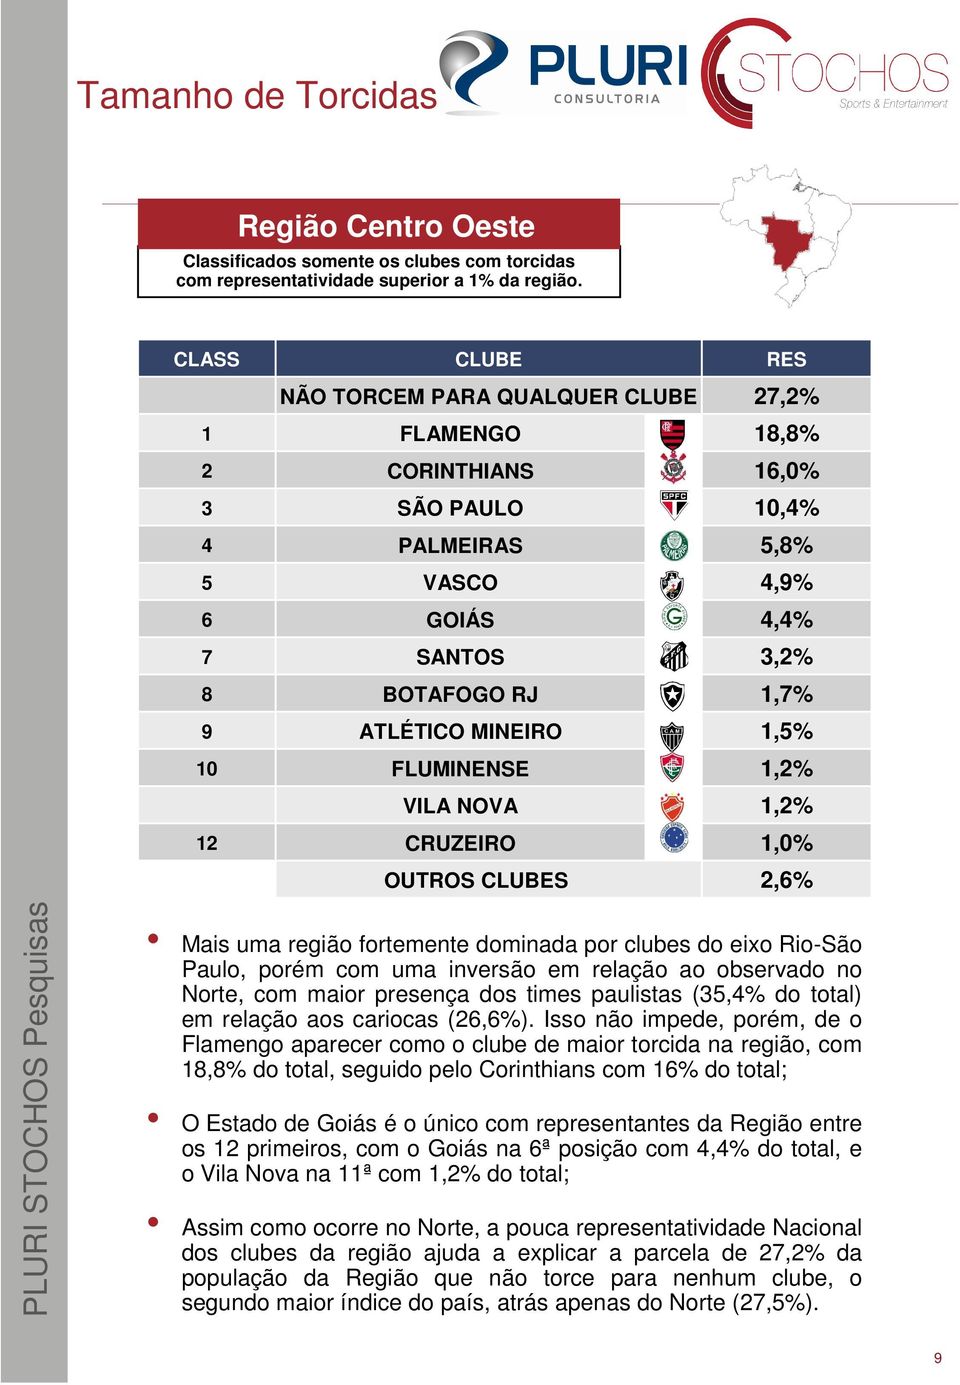 MINEIRO 1,5% 10 FLUMINENSE 1,2% VILA NOVA 1,2% 12 CRUZEIRO 1,0% OUTROS CLUBES 2,6% Mais uma região fortemente dominada por clubes do eixo Rio-São Paulo, porém com uma inversão em relação ao observado